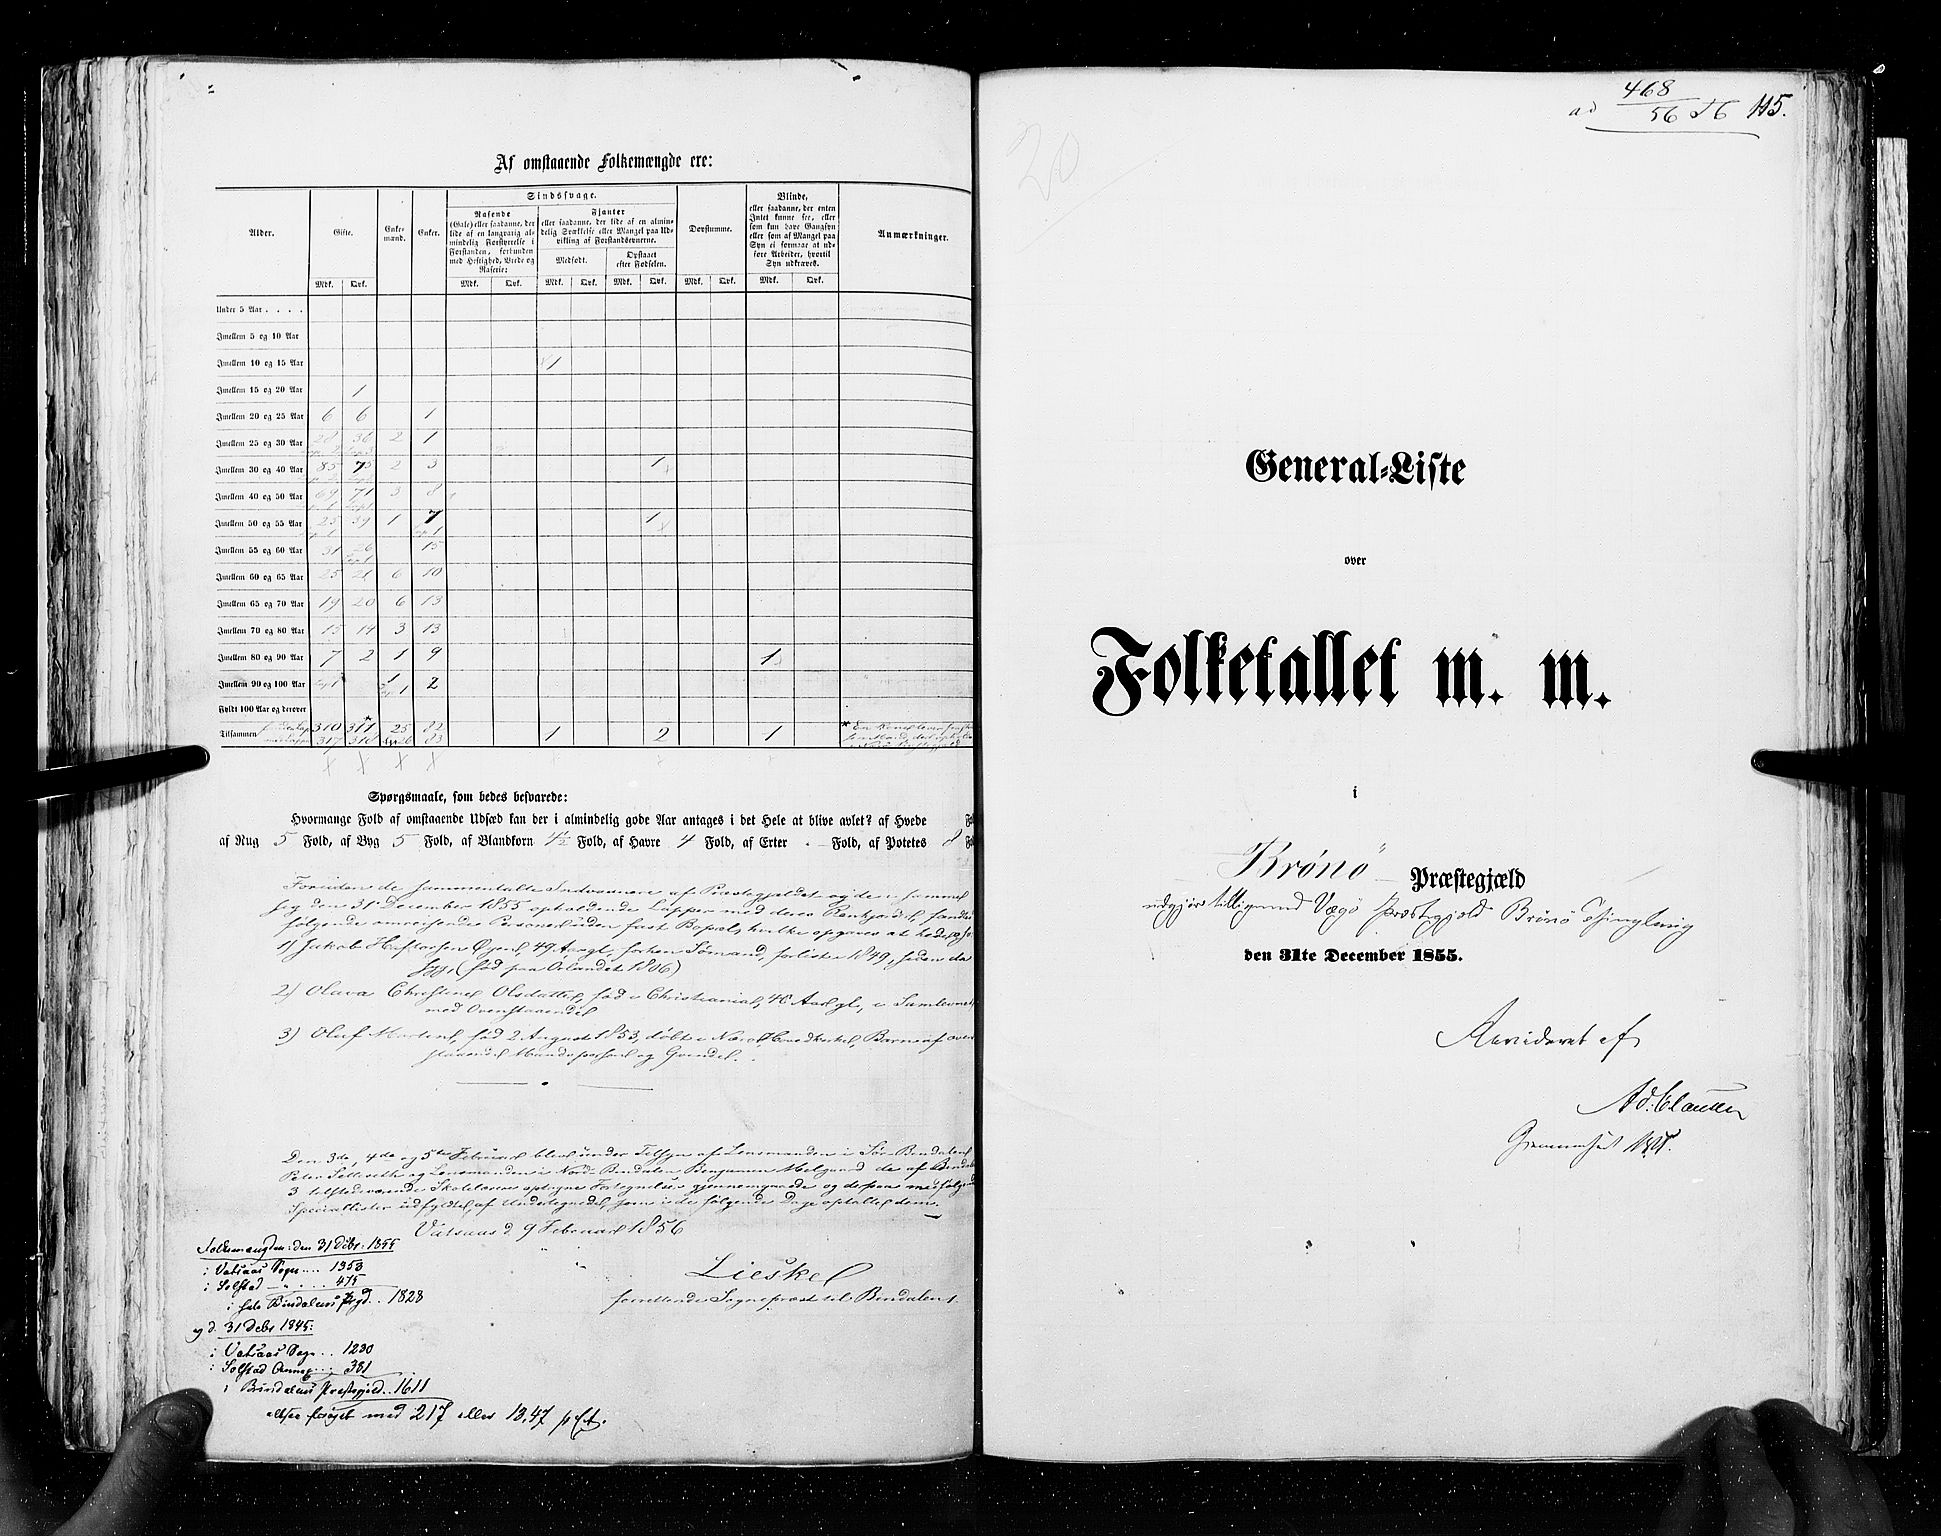 RA, Folketellingen 1855, bind 6A: Nordre Trondhjem amt og Nordland amt, 1855, s. 115